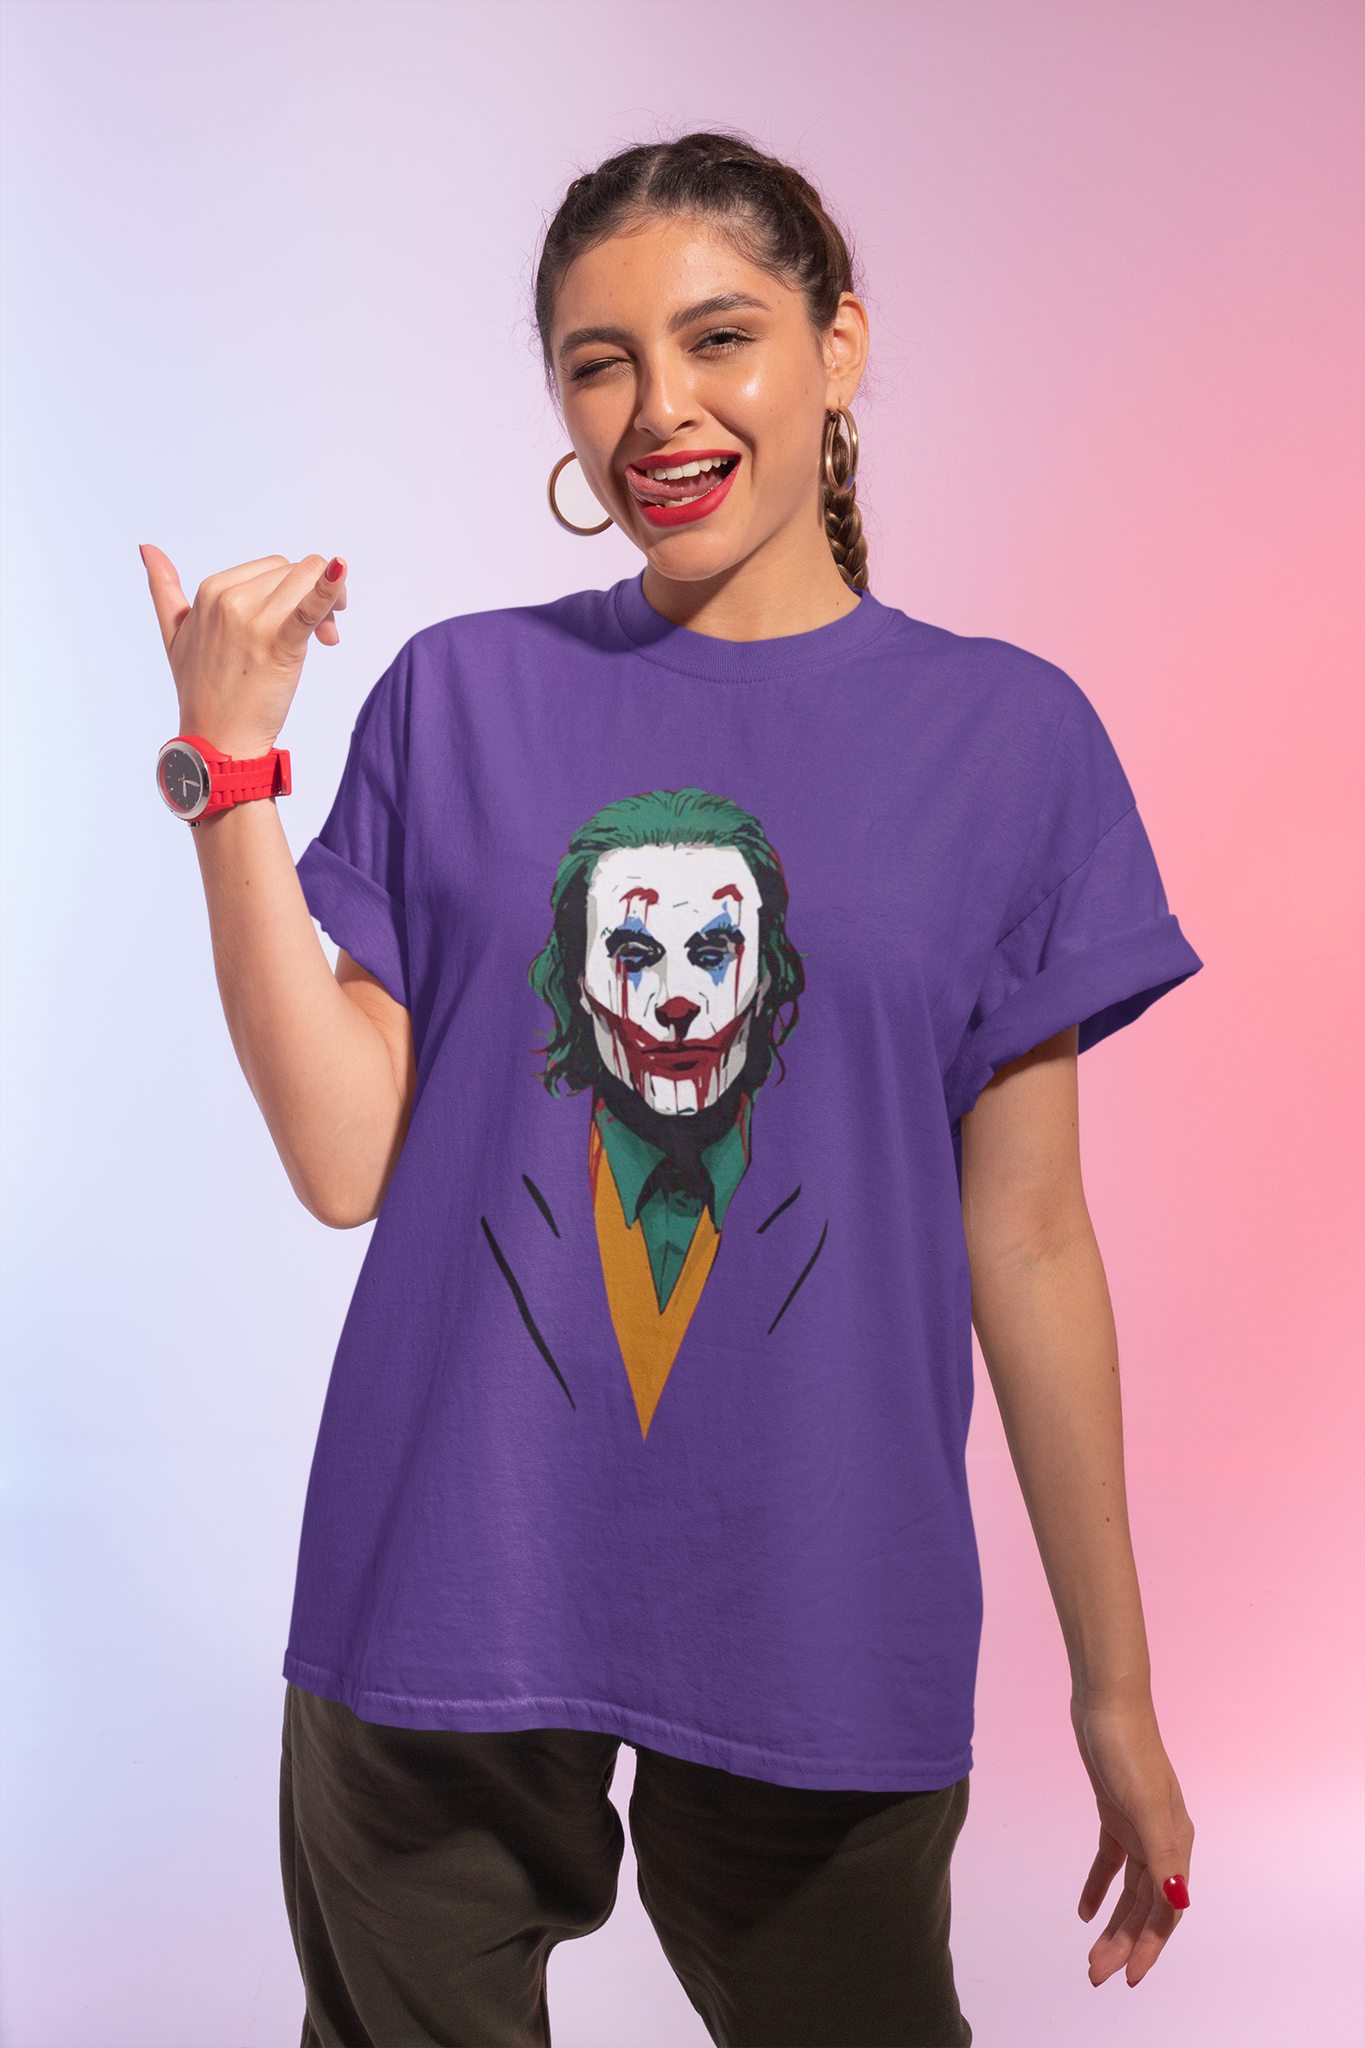 Joker T Shirt, Joker The Comedian Tshirt, Halloween Gifts